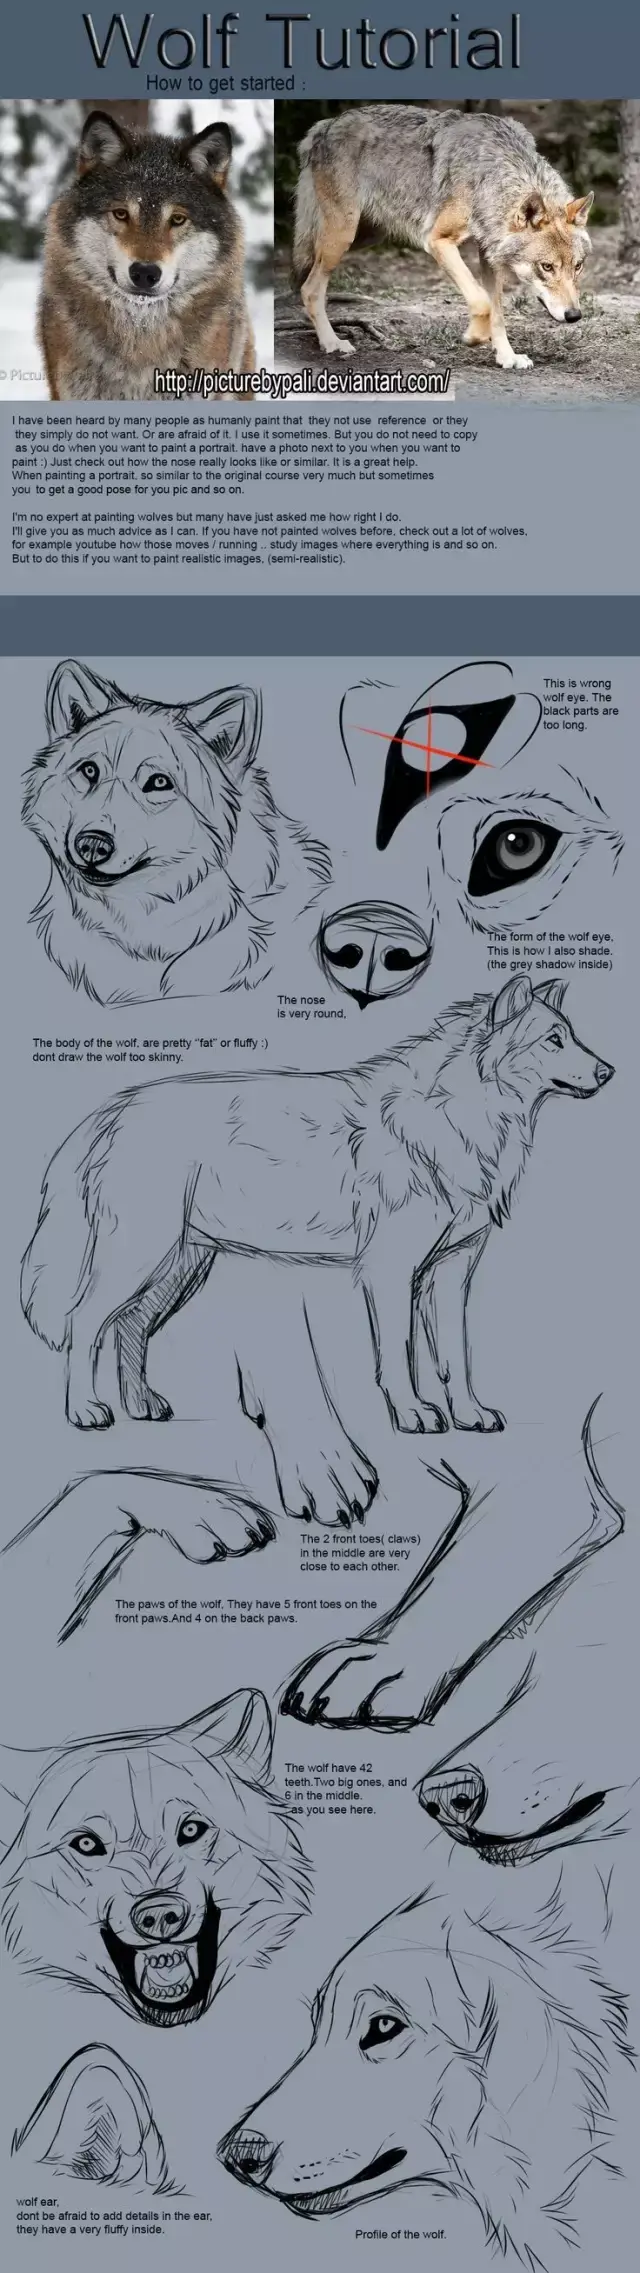 怎样画一只霸气的狼图片